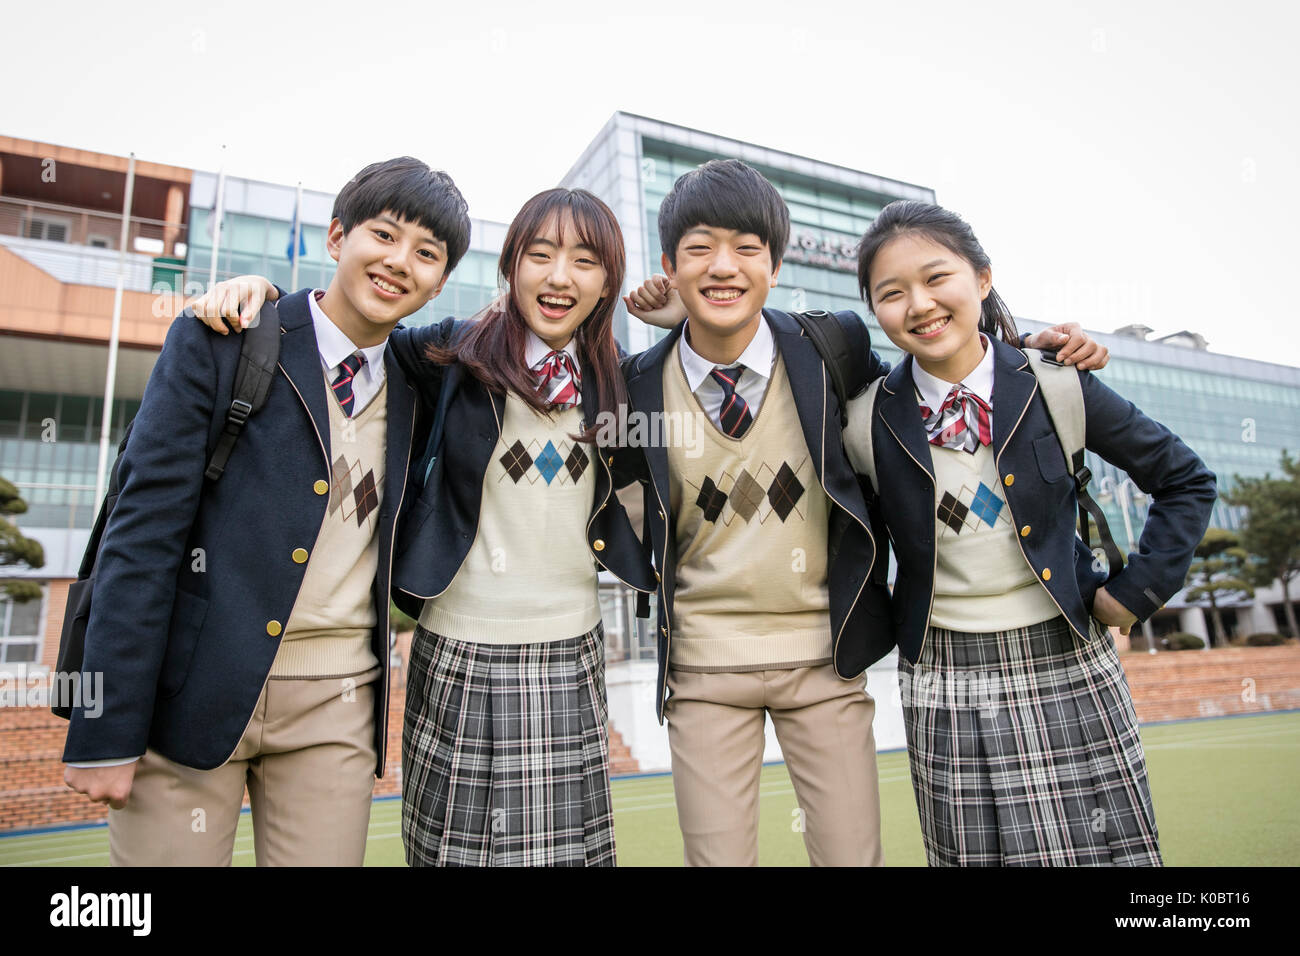 Quatre étudiants de l'école souriant posant contre leur école Banque D'Images